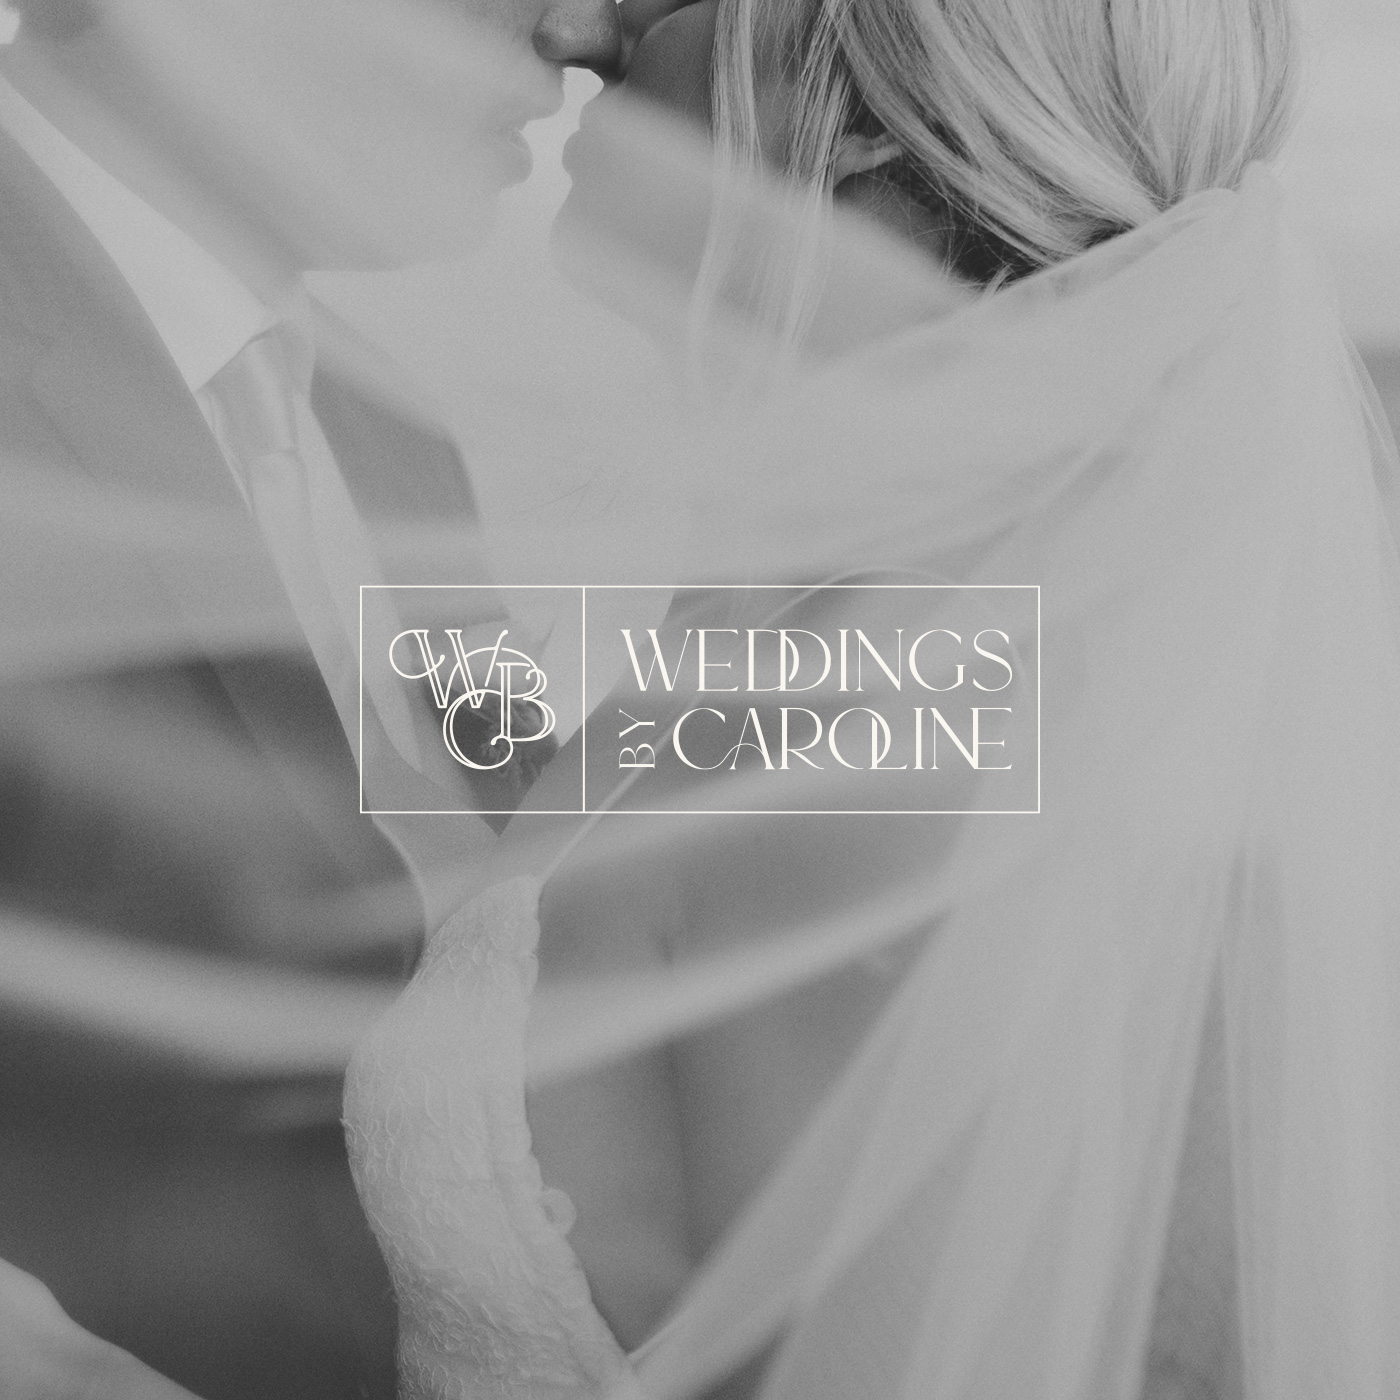 Weddings by Caroline: identyfikacja wizualna marki - branża ślubna: wedding planner | logo, paleta barw, strona internetowa, blog ślubny